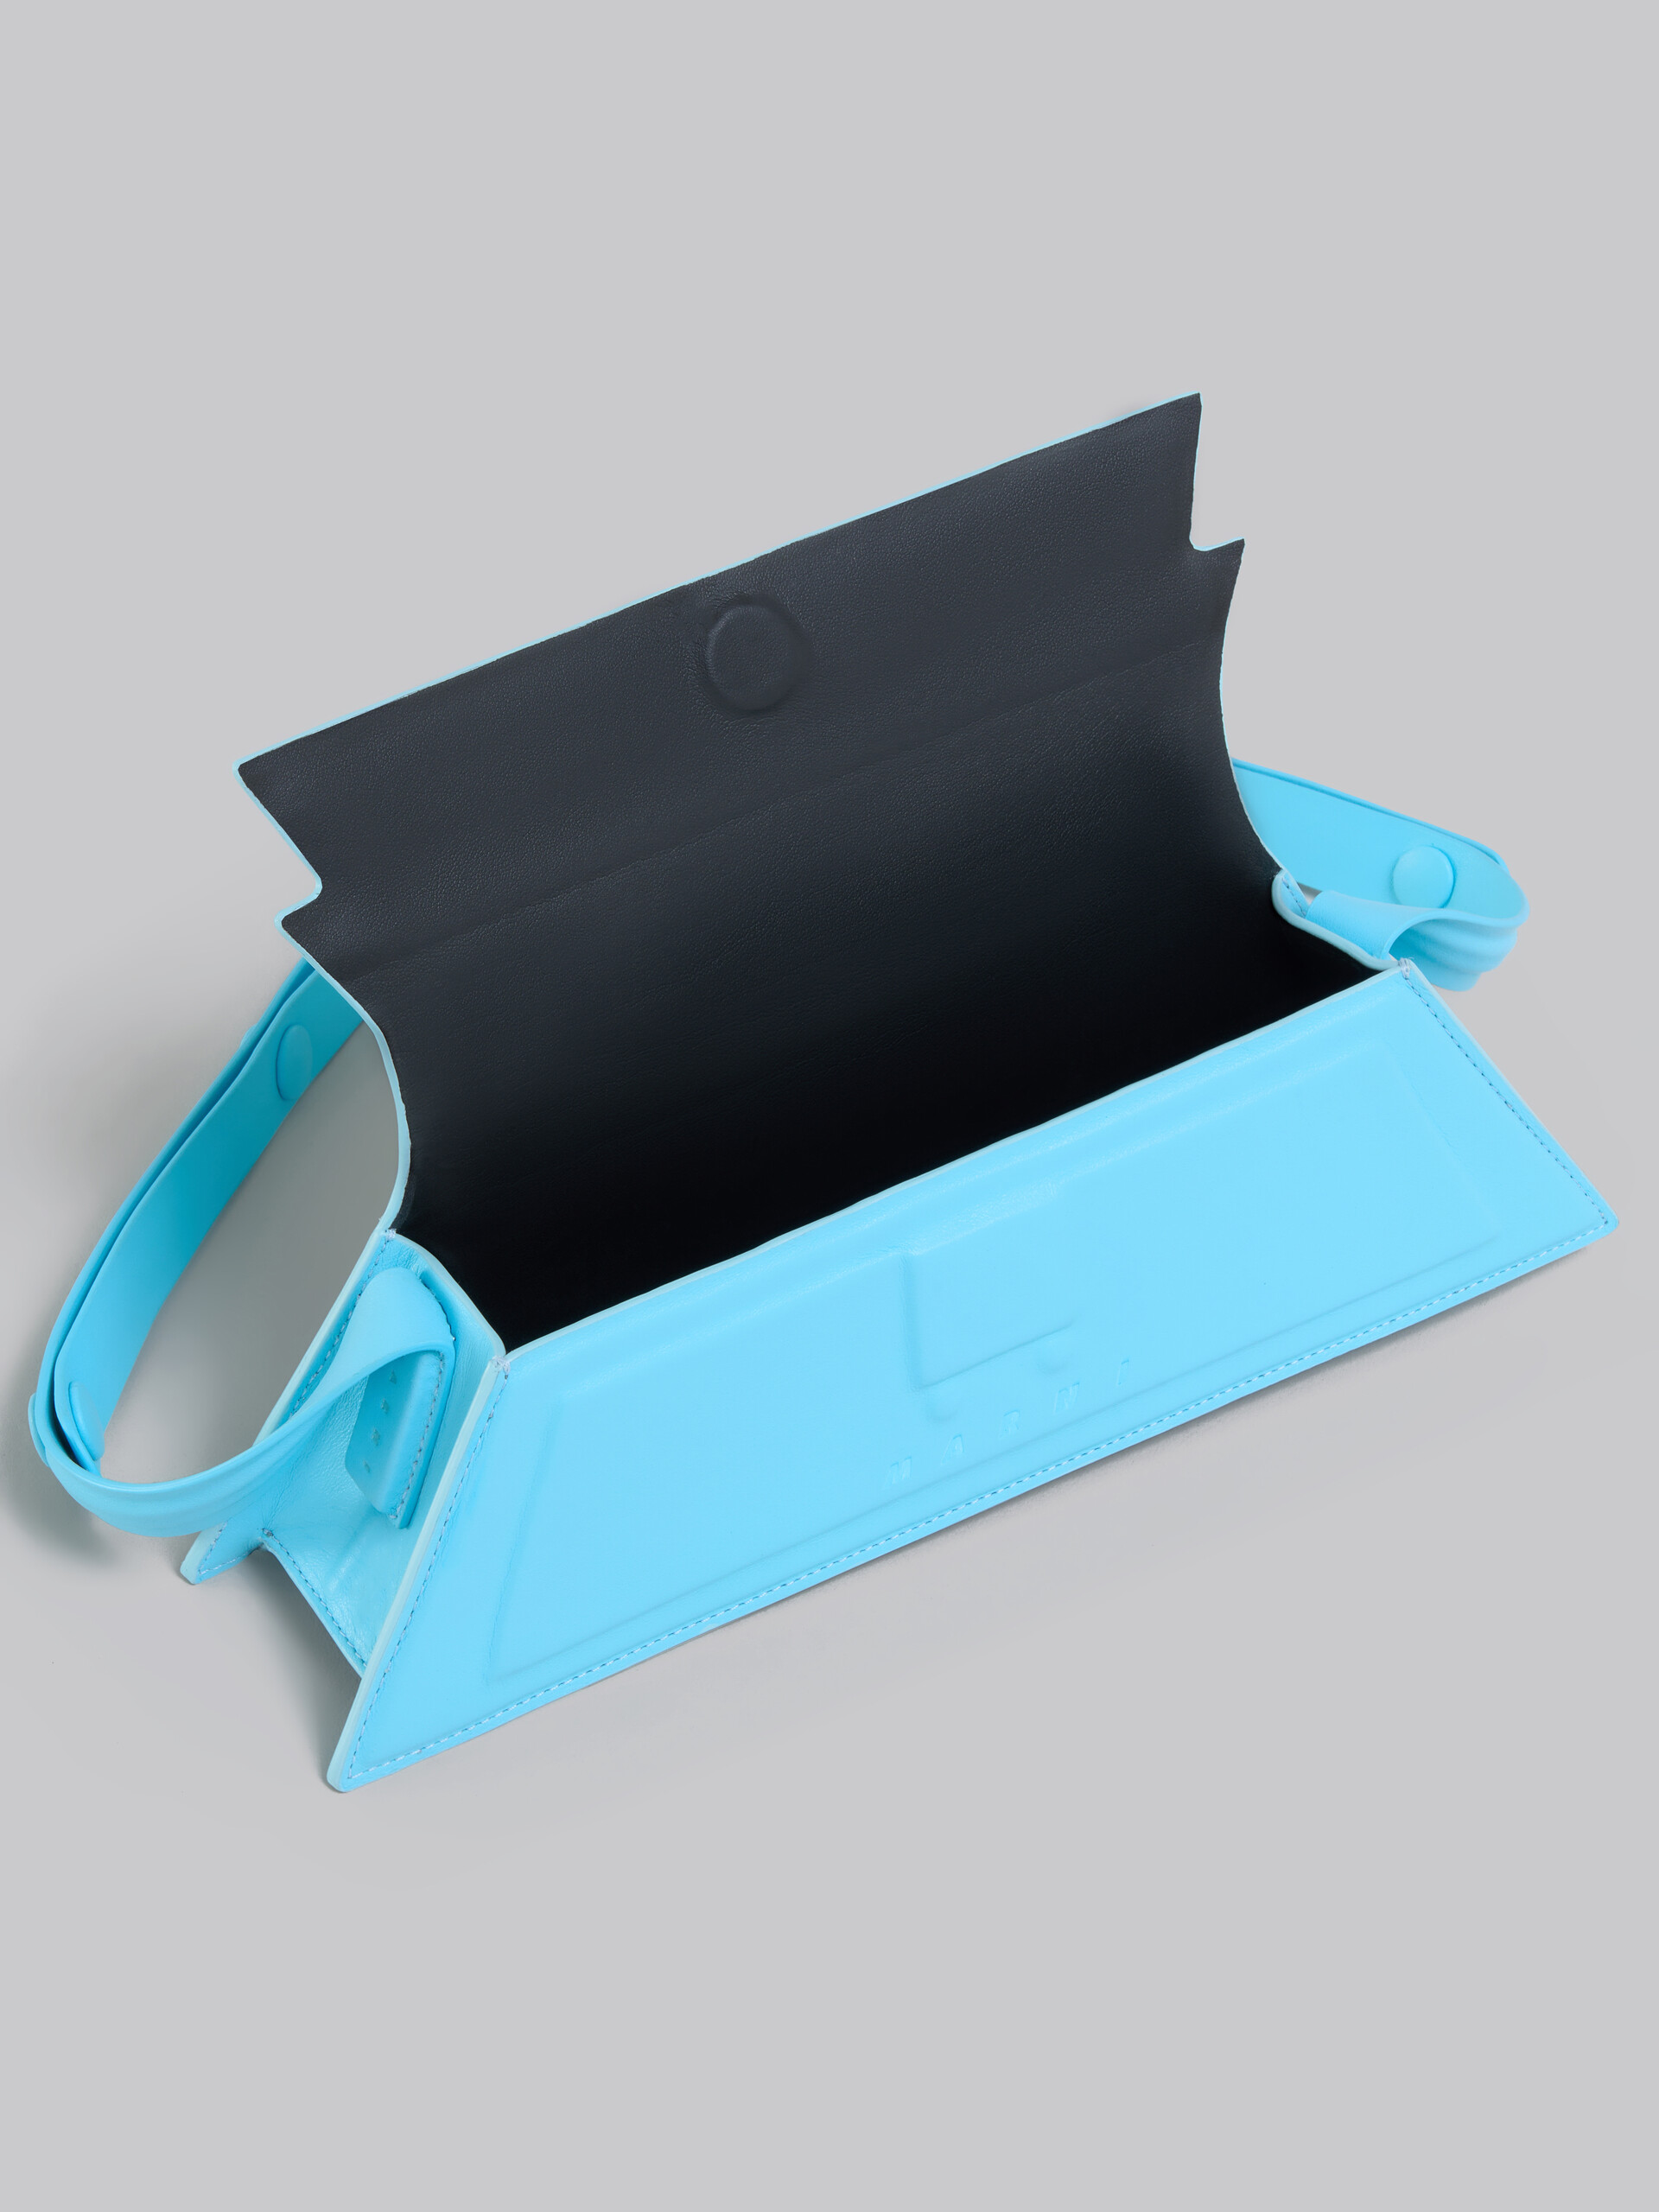 Mini-sac Trunkoise en cuir lisse bleu clair - Sacs portés épaule - Image 4